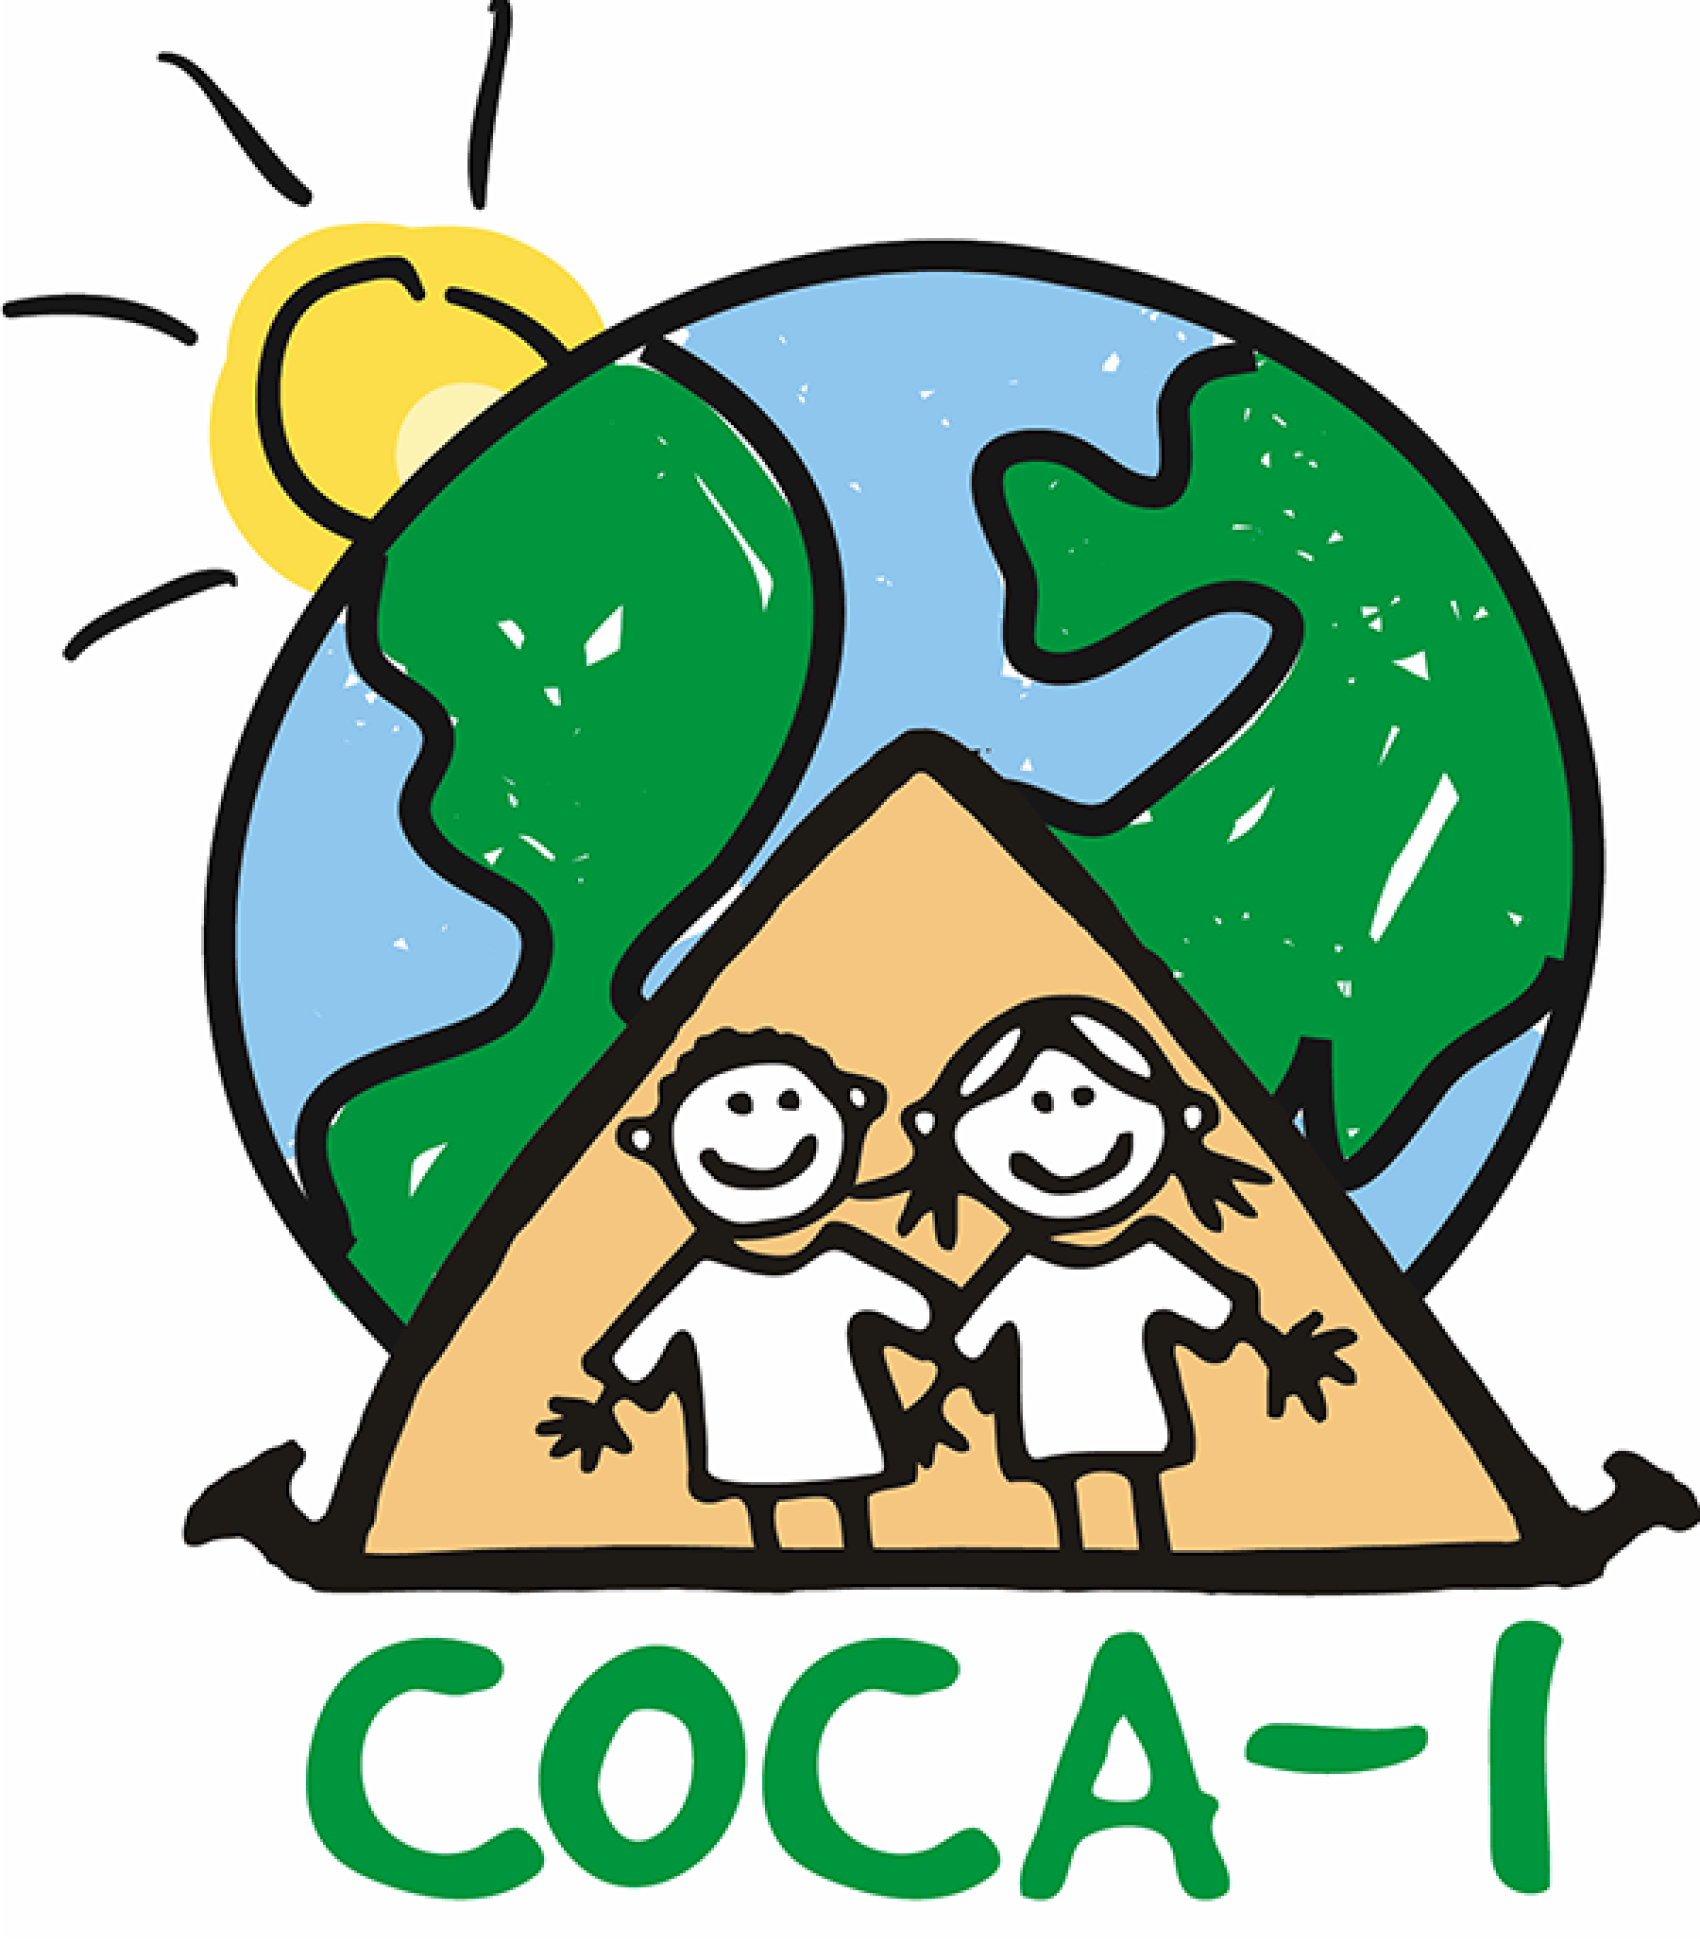 COCA logo